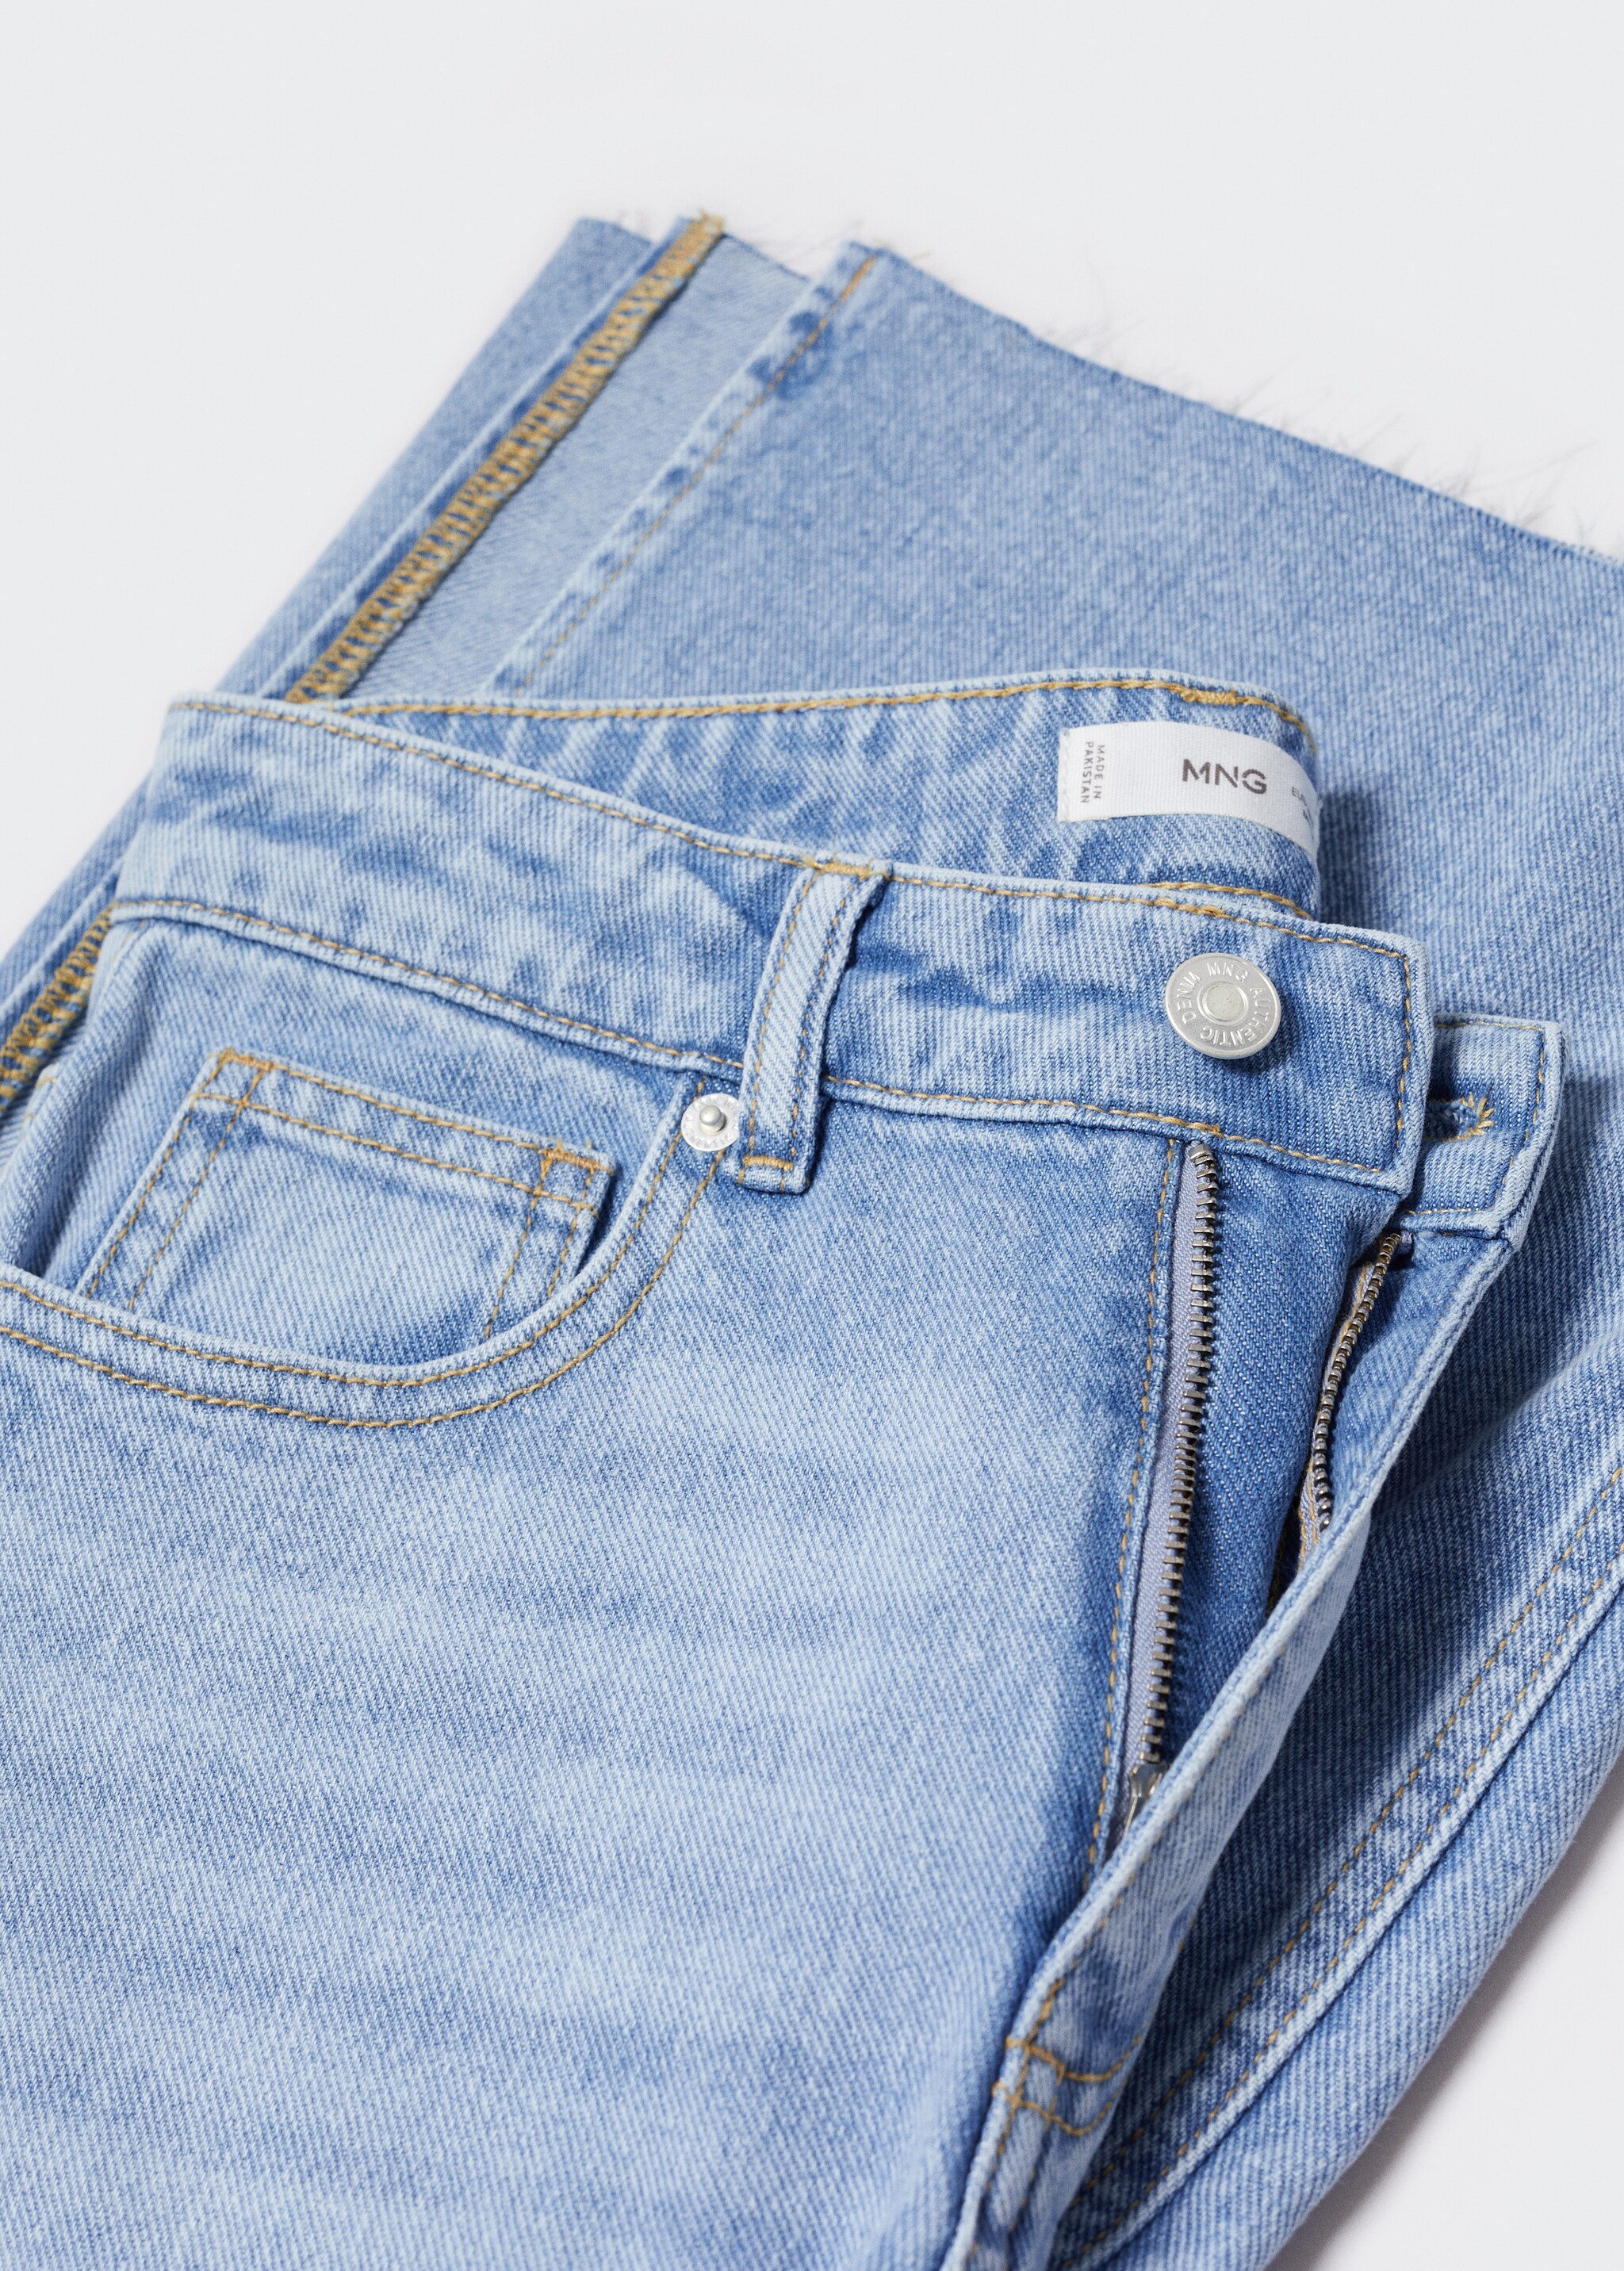 Jean style jupe-culotte ouvertures - Détail de l'article 8